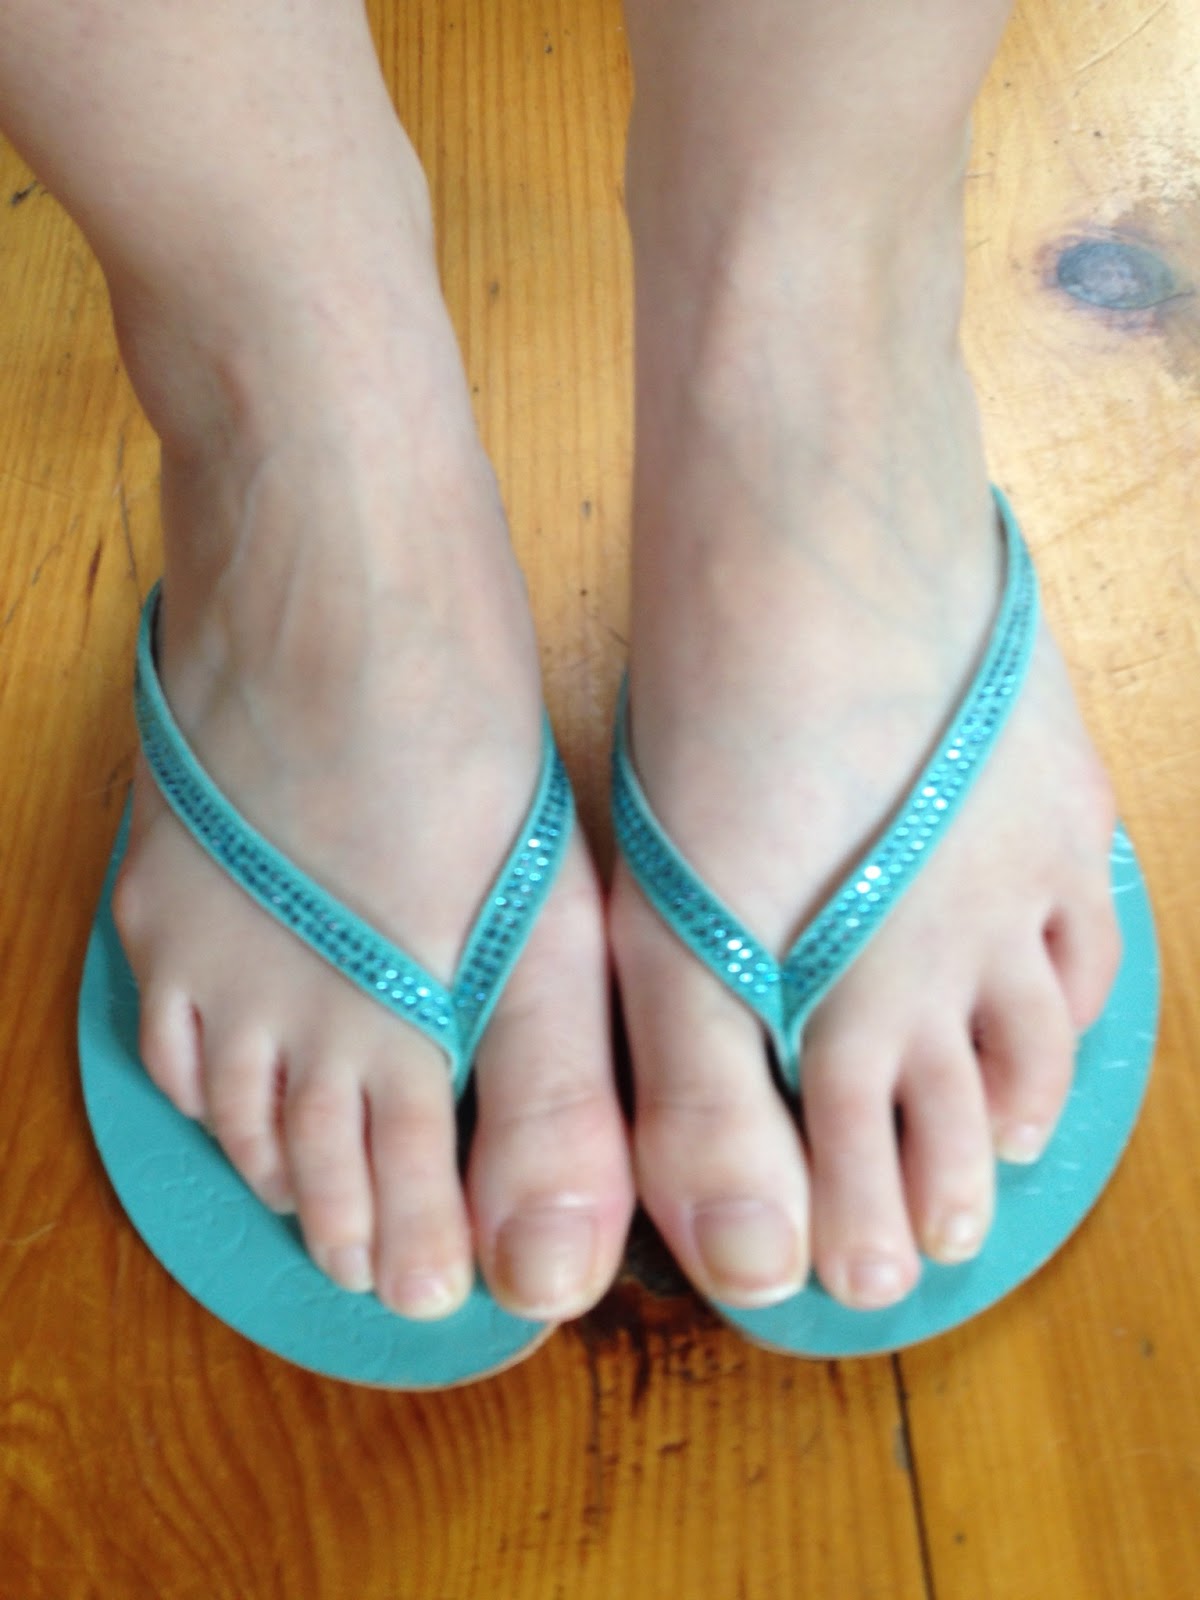 Amateur feet pics